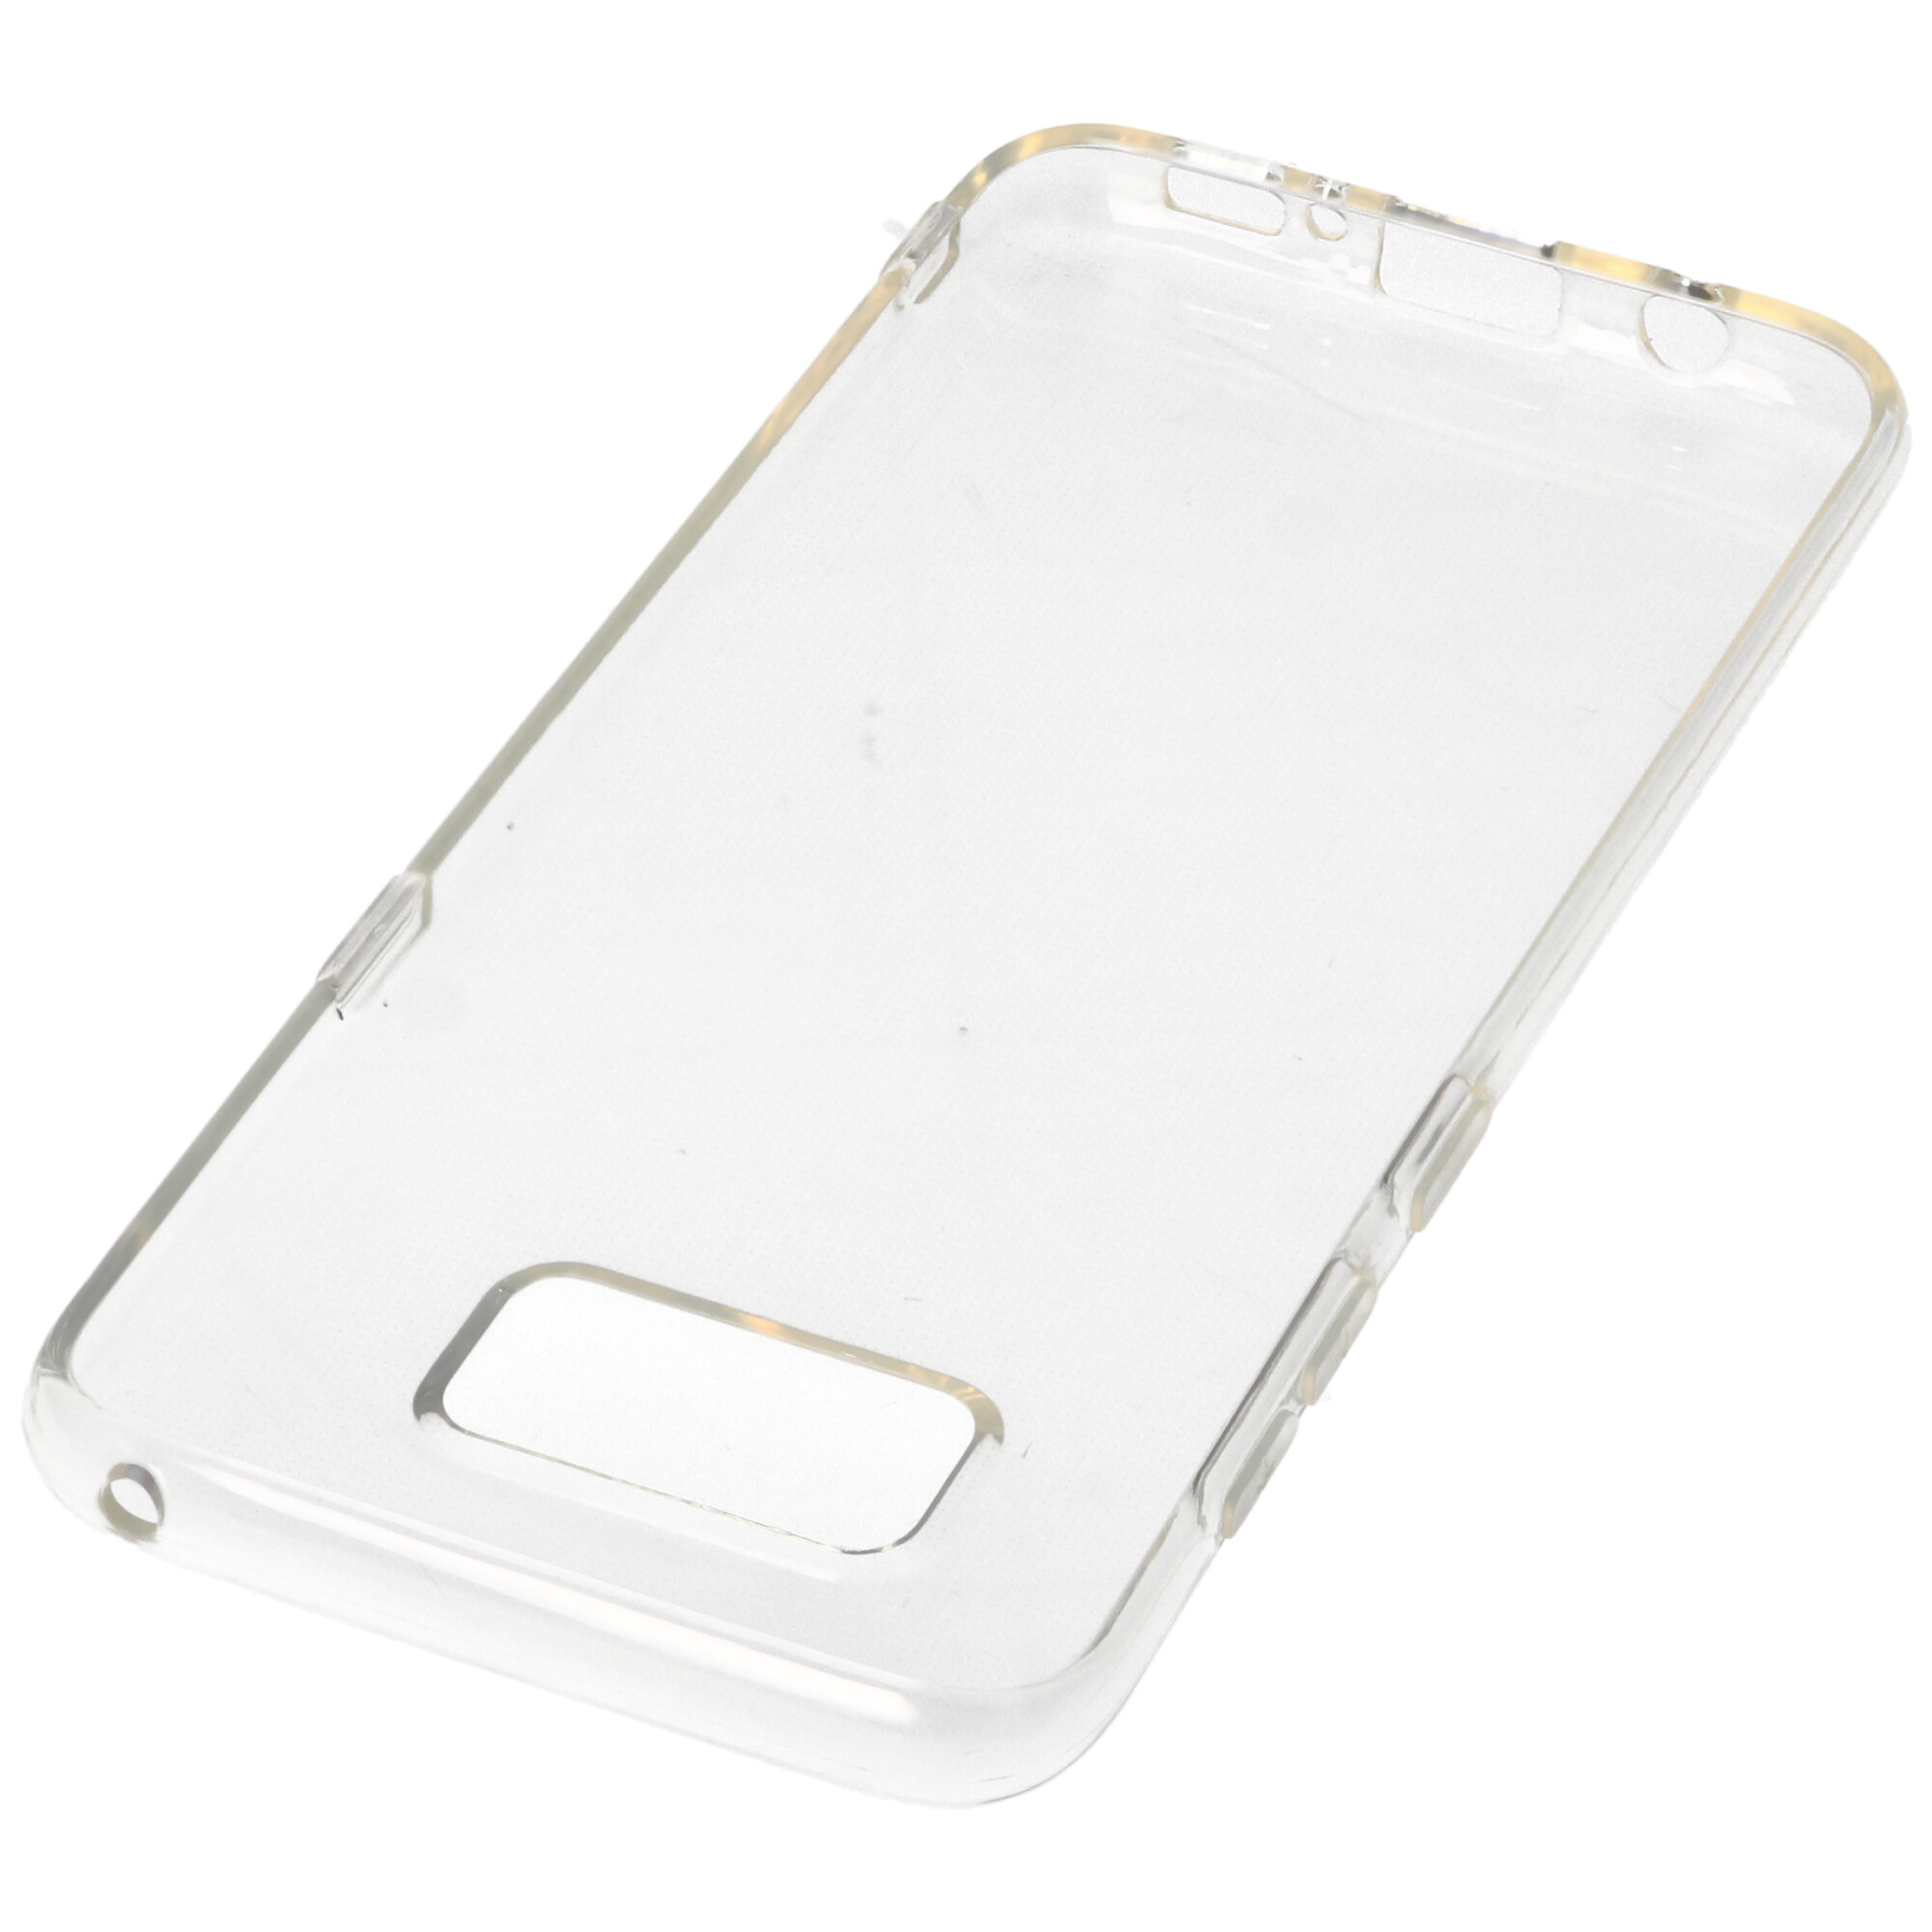 Hülle passend für Samsung Galaxy S8 - transparente Schutzhülle, Anti-Gelb Luftkissen Fallschutz Silikon Handyhülle robustes TPU Case